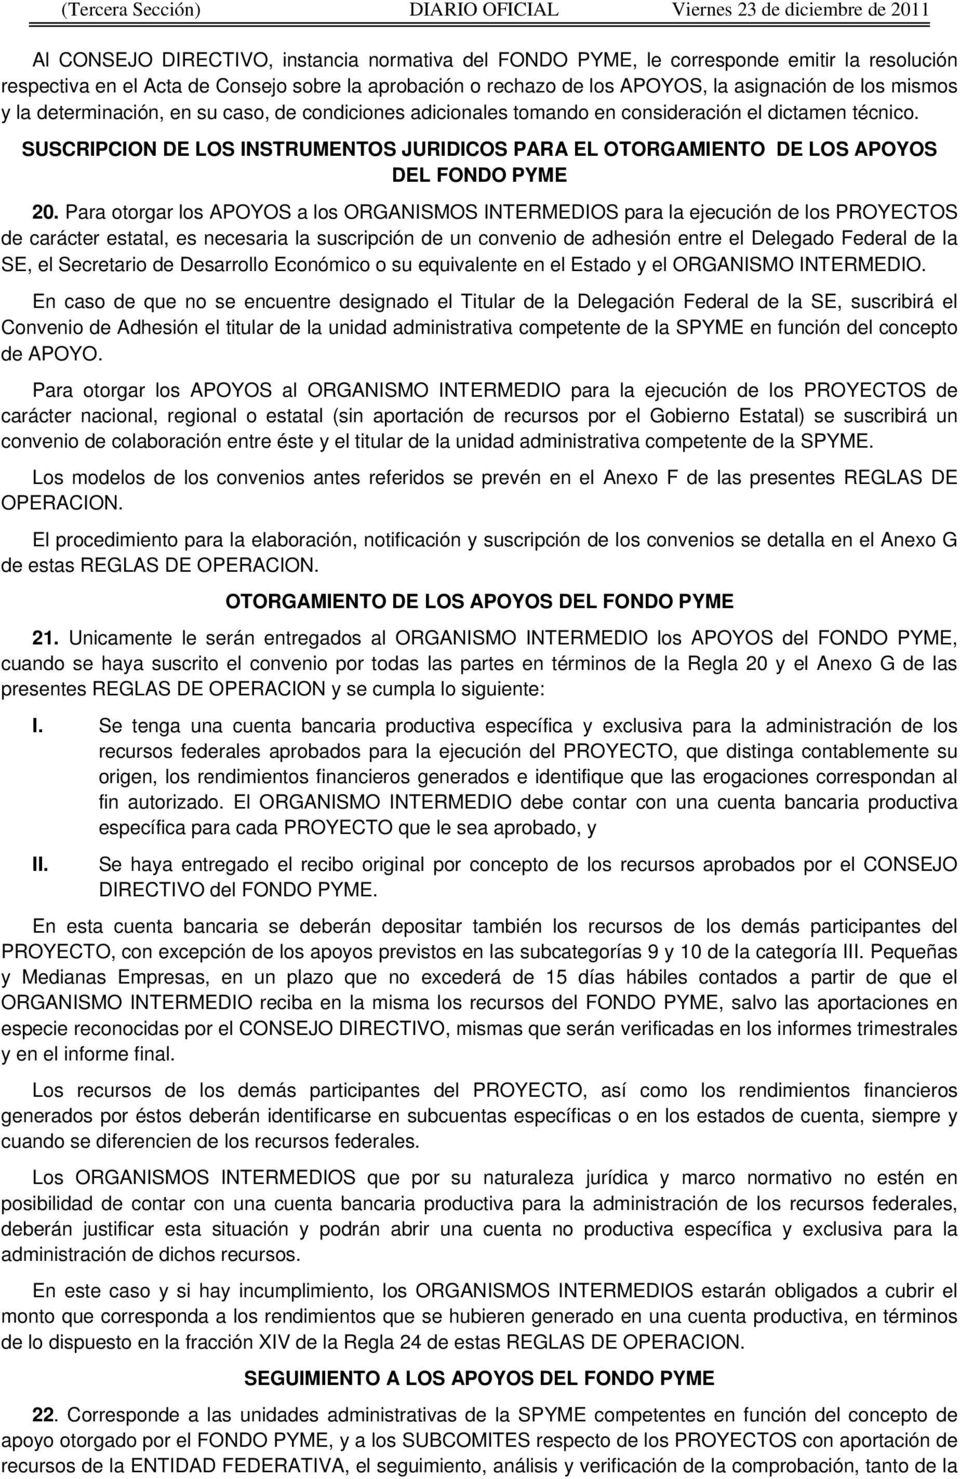 SUSCRIPCION DE LOS INSTRUMENTOS JURIDICOS PARA EL OTORGAMIENTO DE LOS APOYOS DEL FONDO PYME 20.